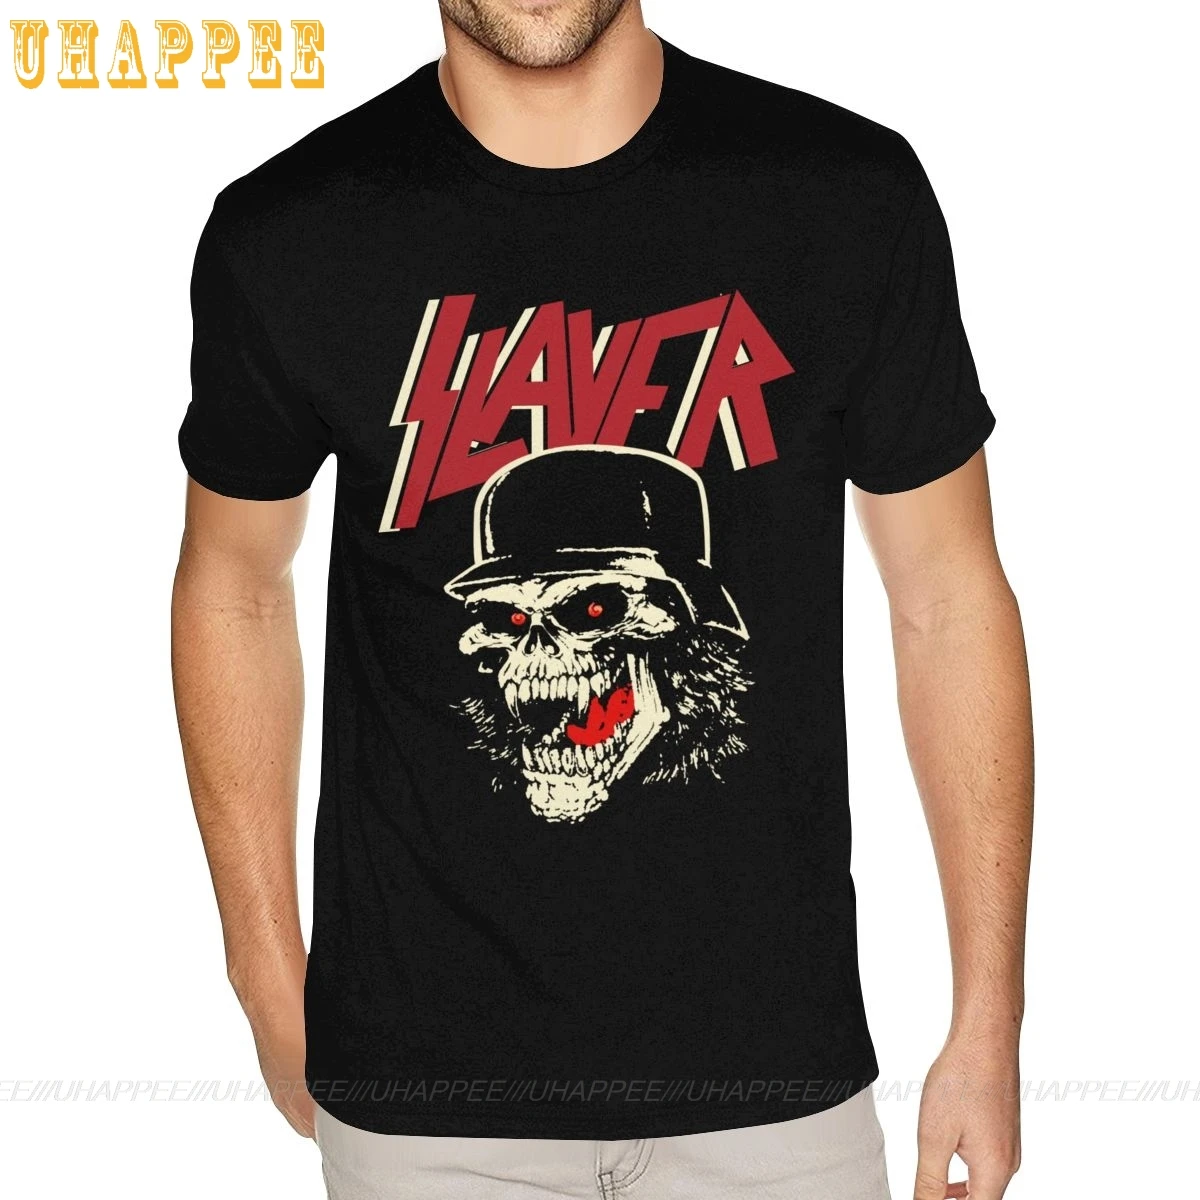 Fresco Slayer Camiseta de Grunge de la Banda de Rock Camisetas de los Hombres de Punk Rock de manga Corta de Algodón Urbano camiseta Barata de Descuento de Merchandising de Prendas de vestir 2